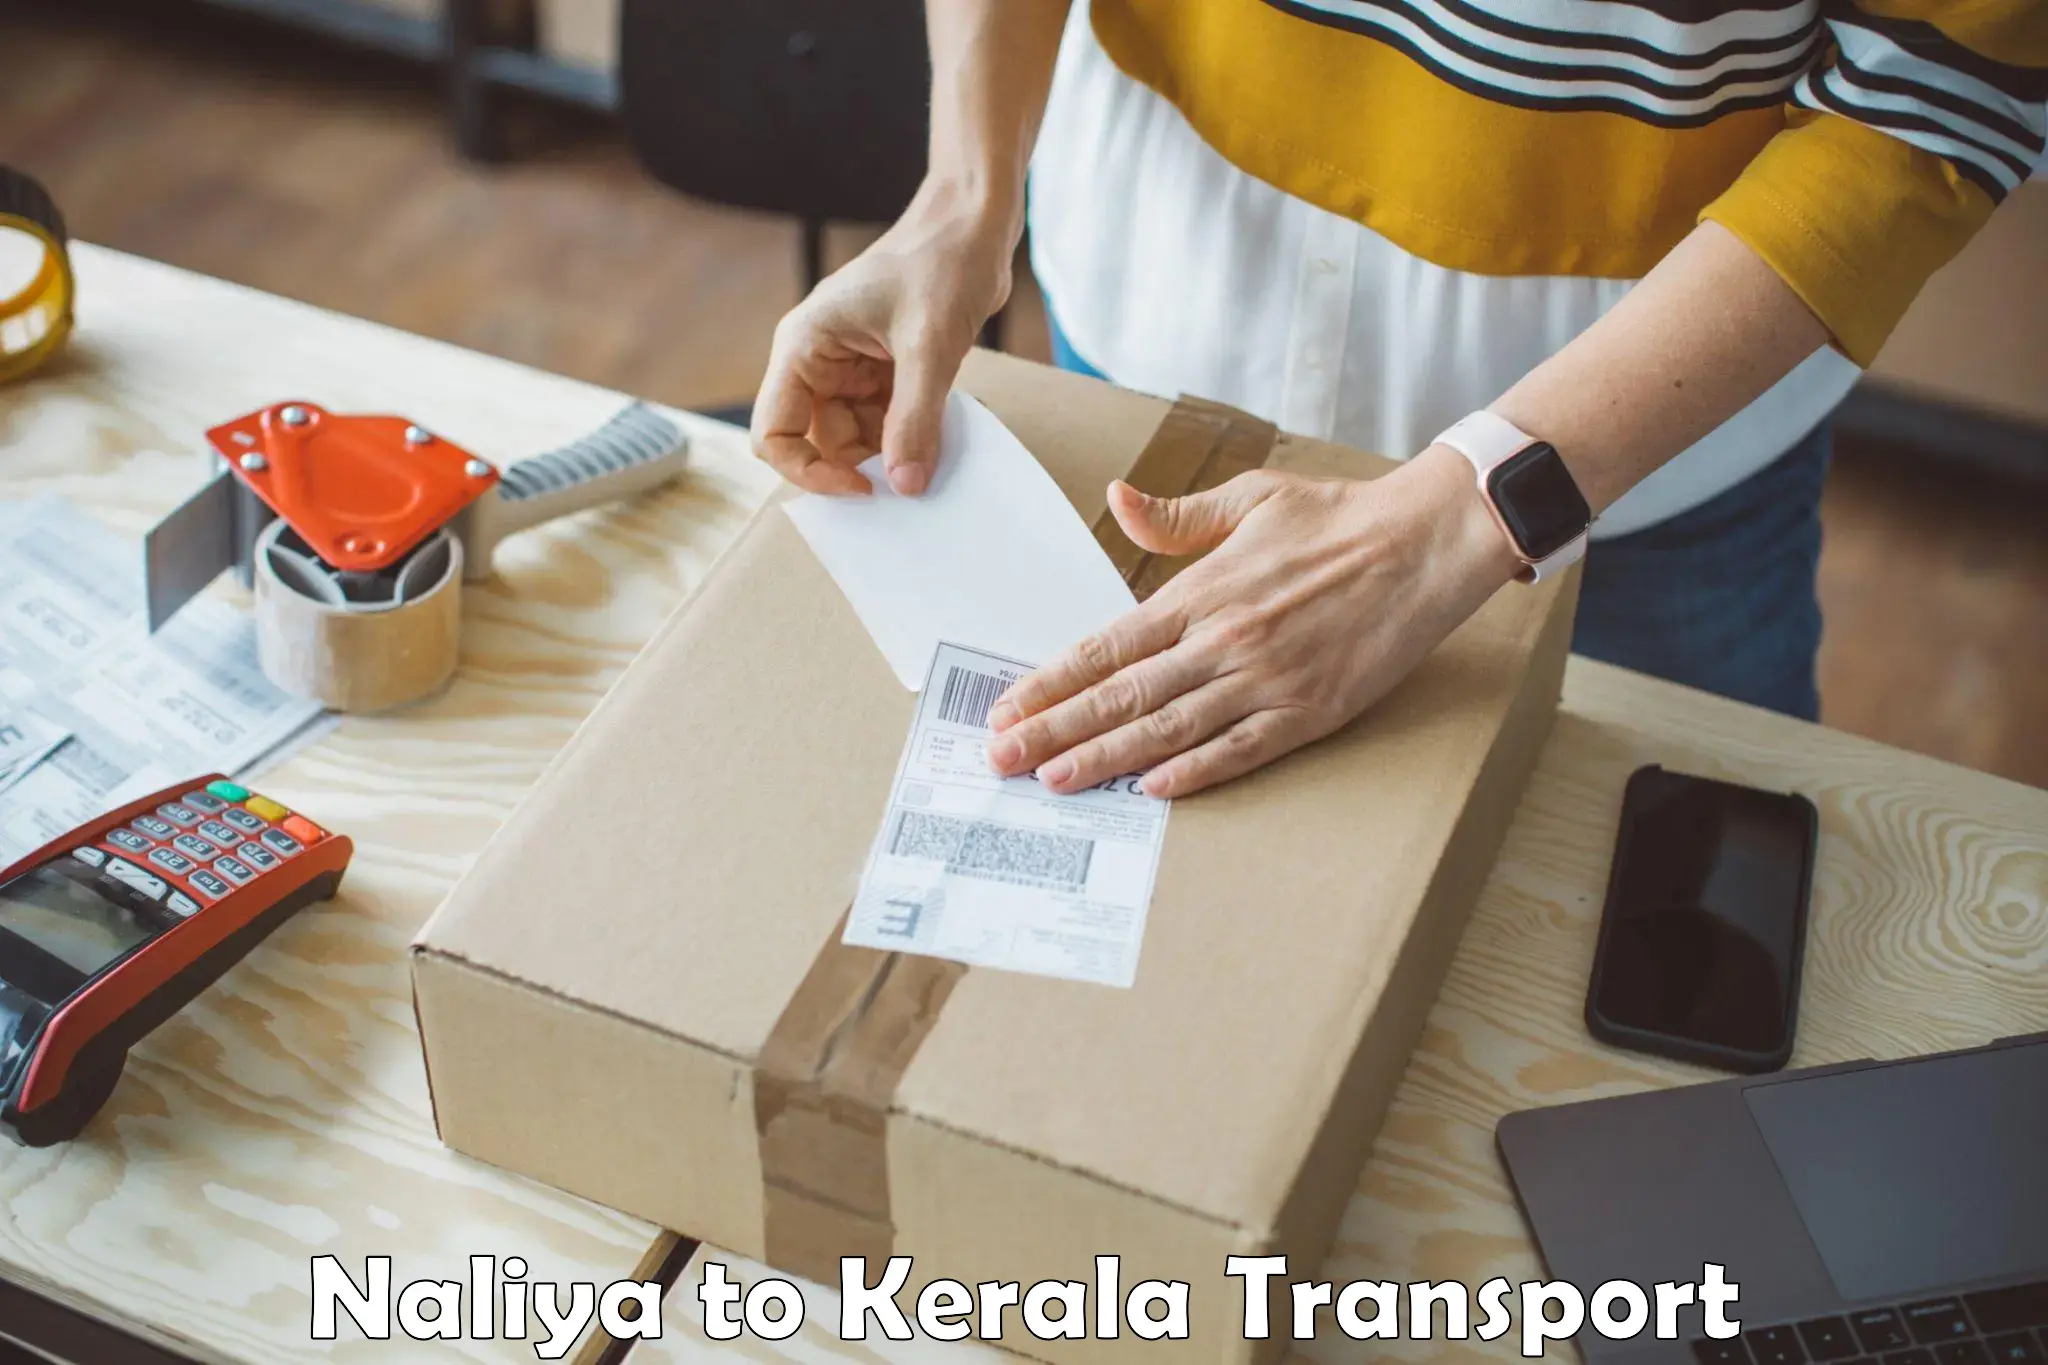 Daily parcel service transport Naliya to Nallepilly